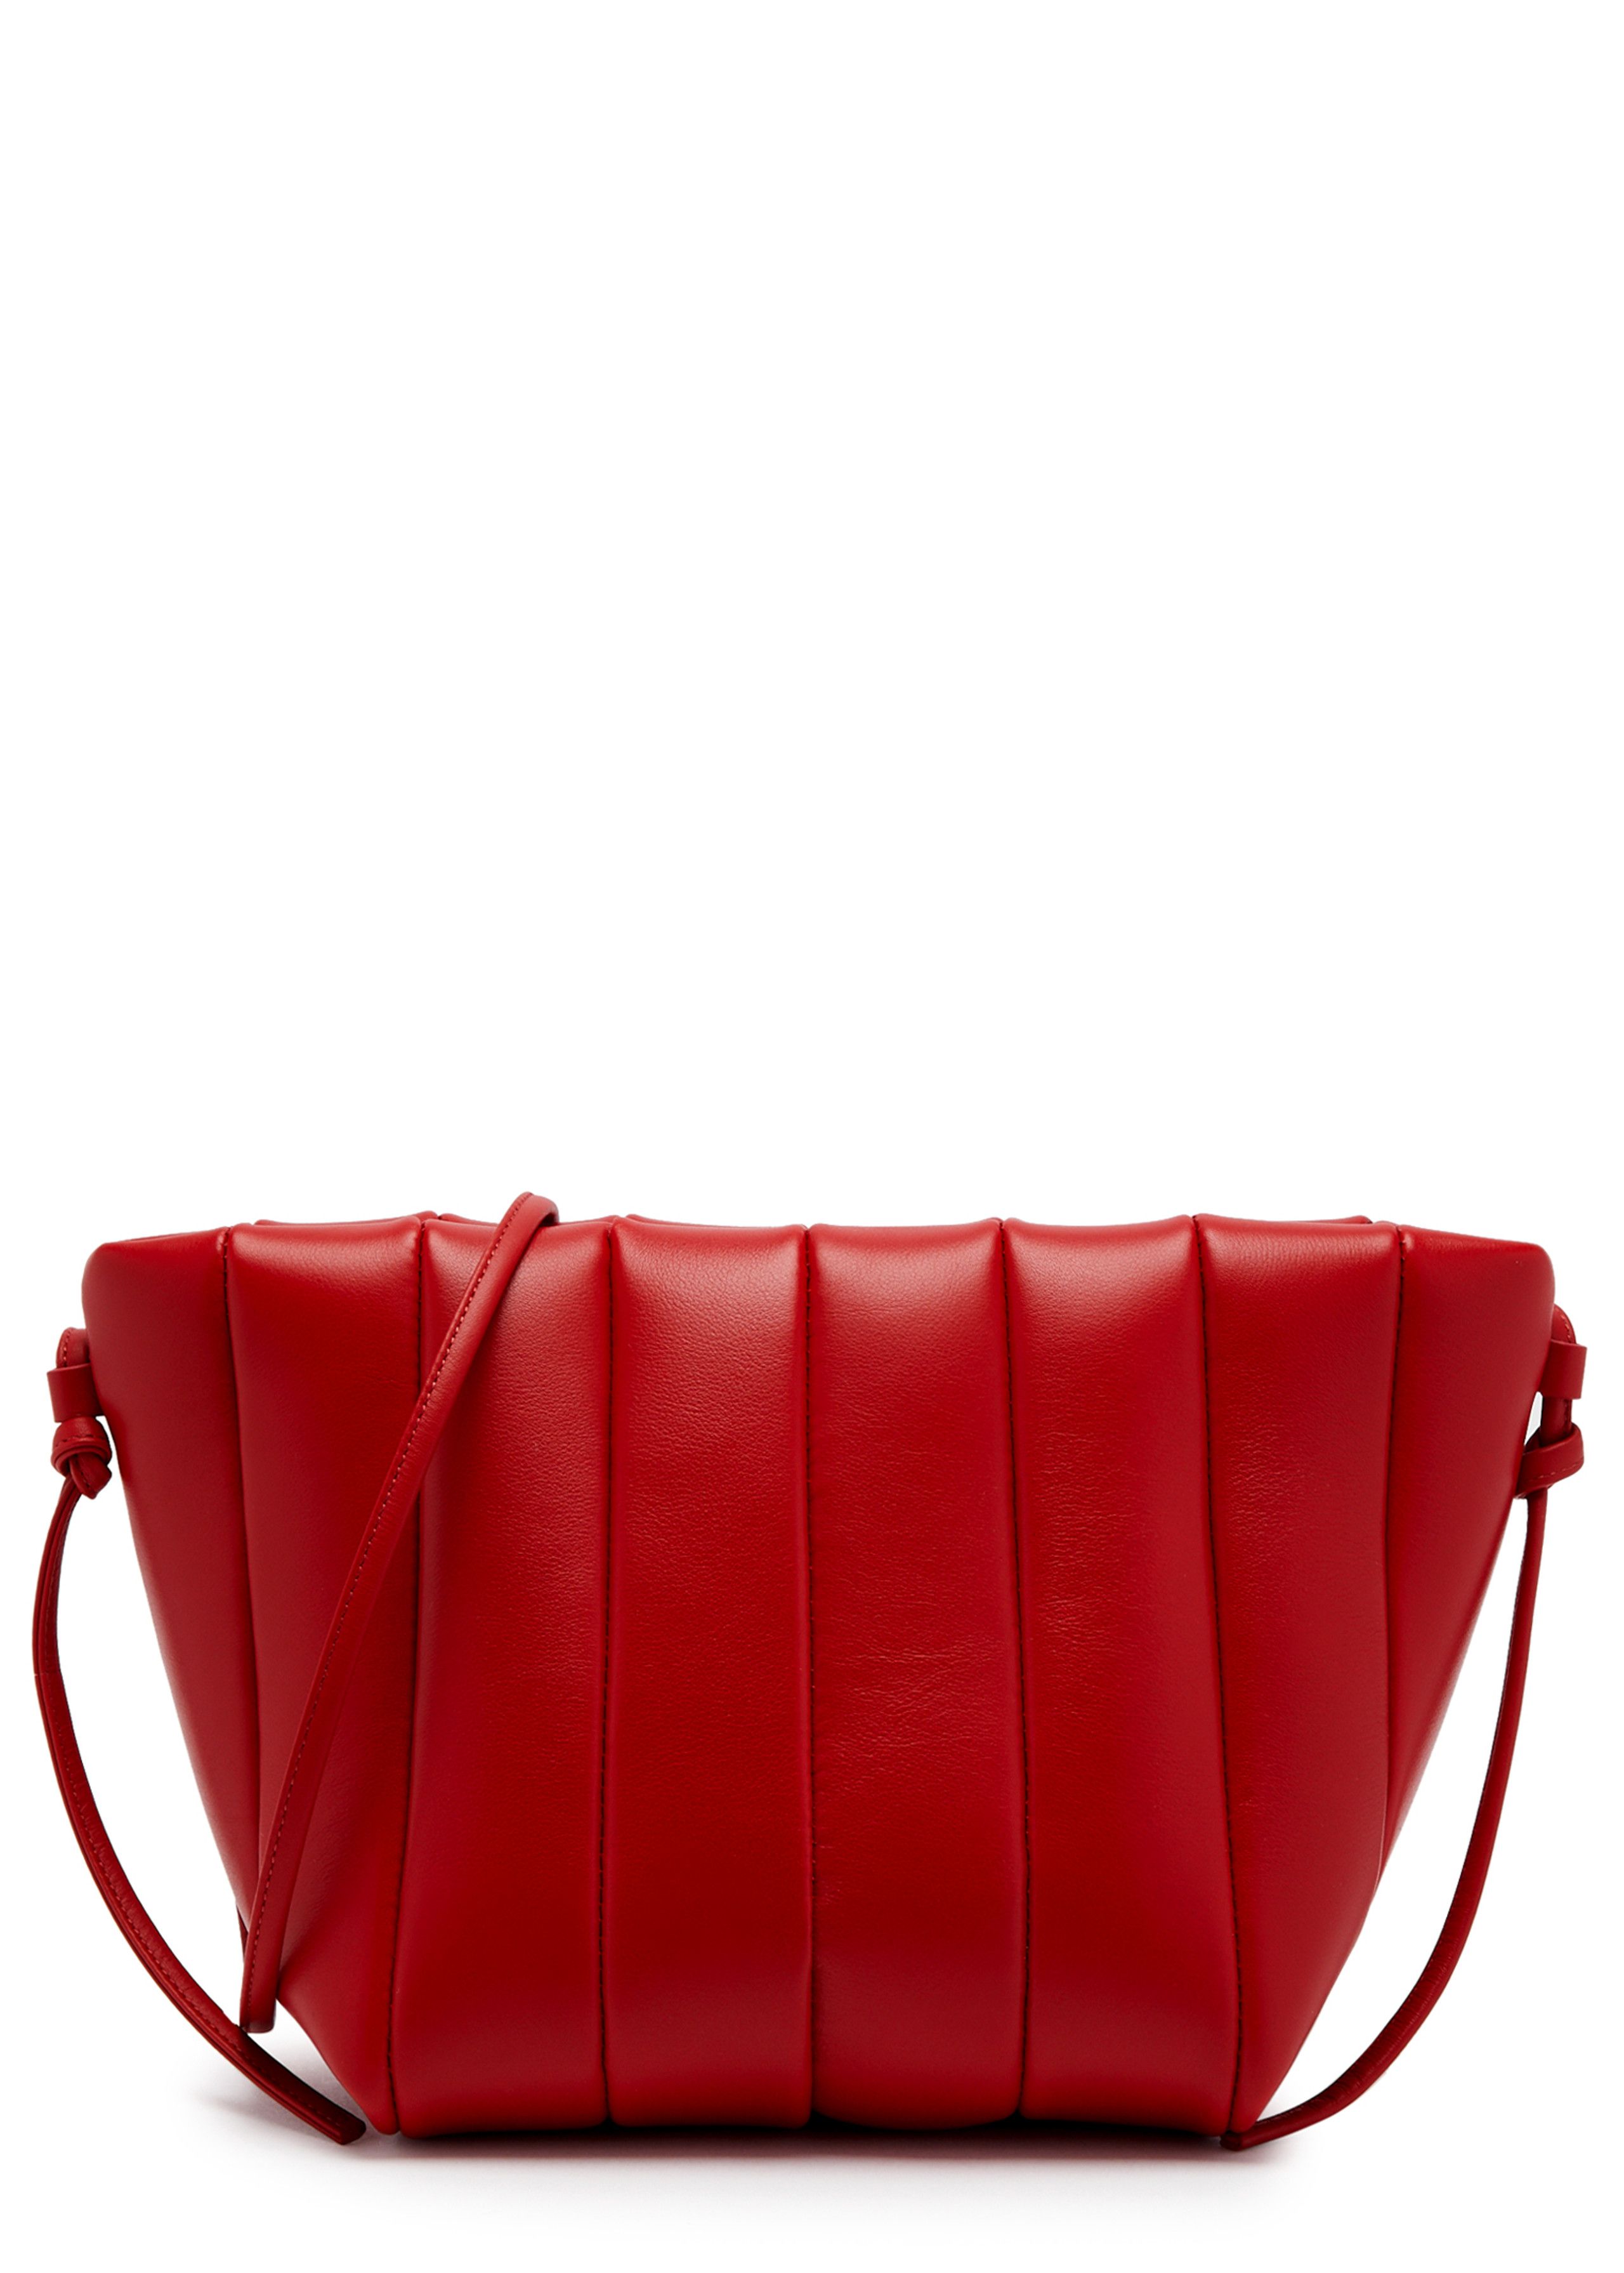 Boulevard quilted leather shoulder bag | Harvey Nichols (Global)